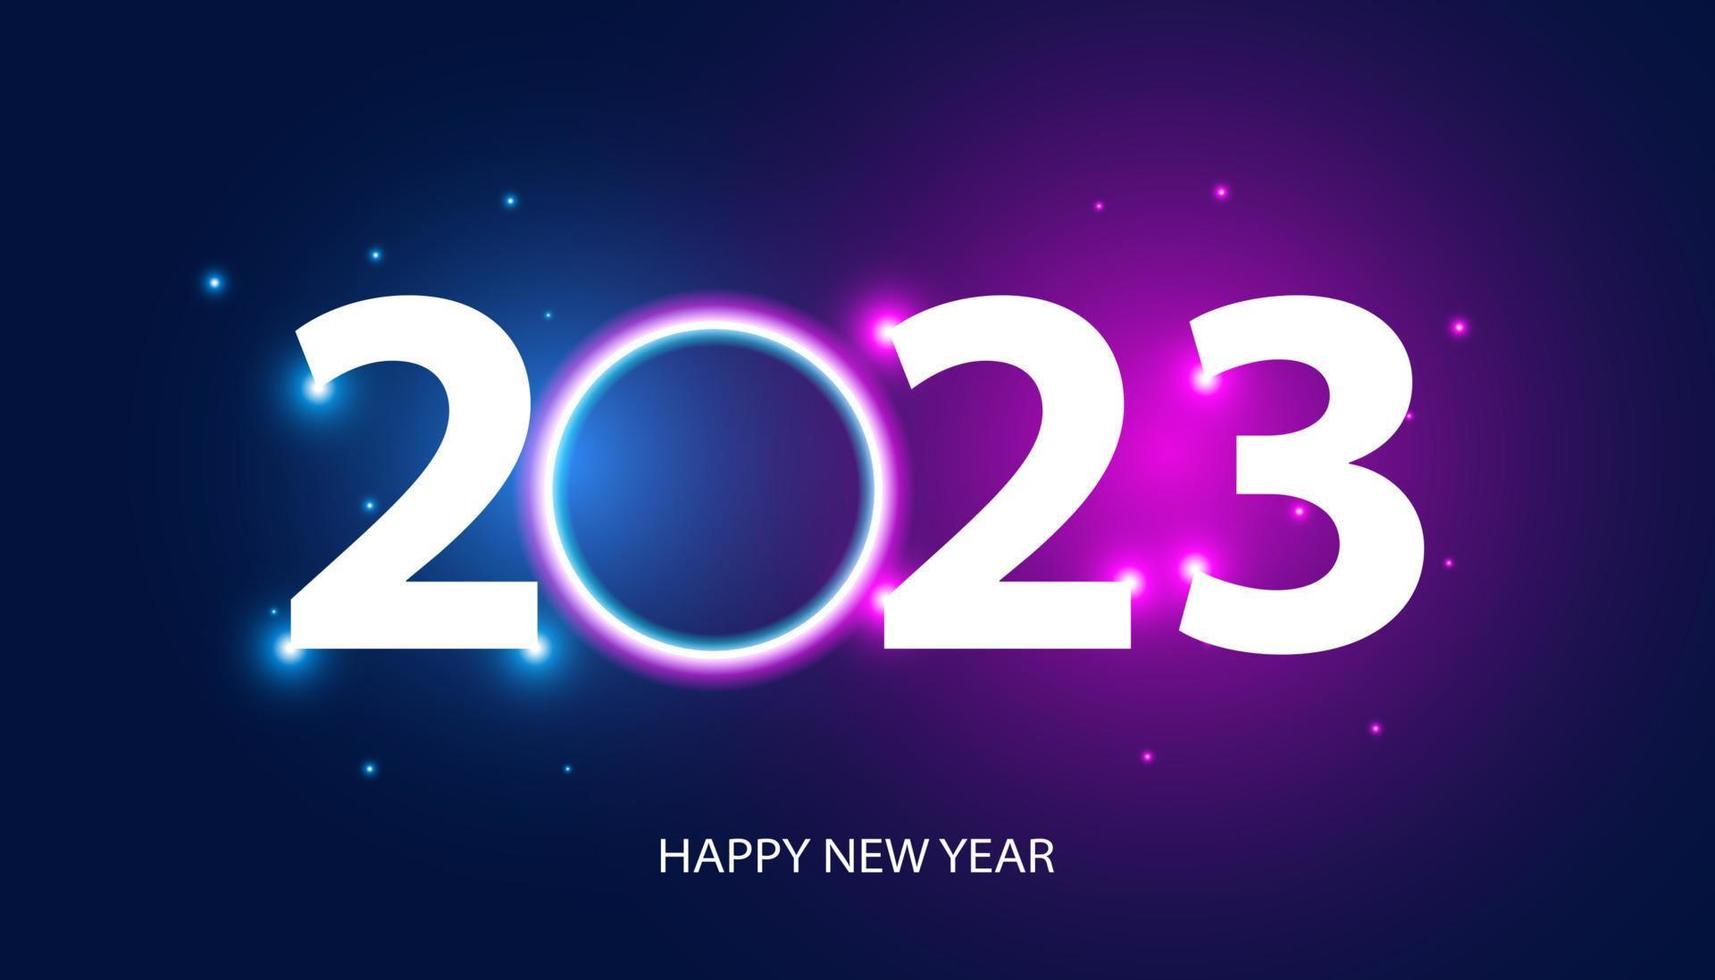 abstrato feliz ano novo 2023 círculo luz rede digital em fundo azul e roxo digital futurista moderno espaço de alta tecnologia vetor